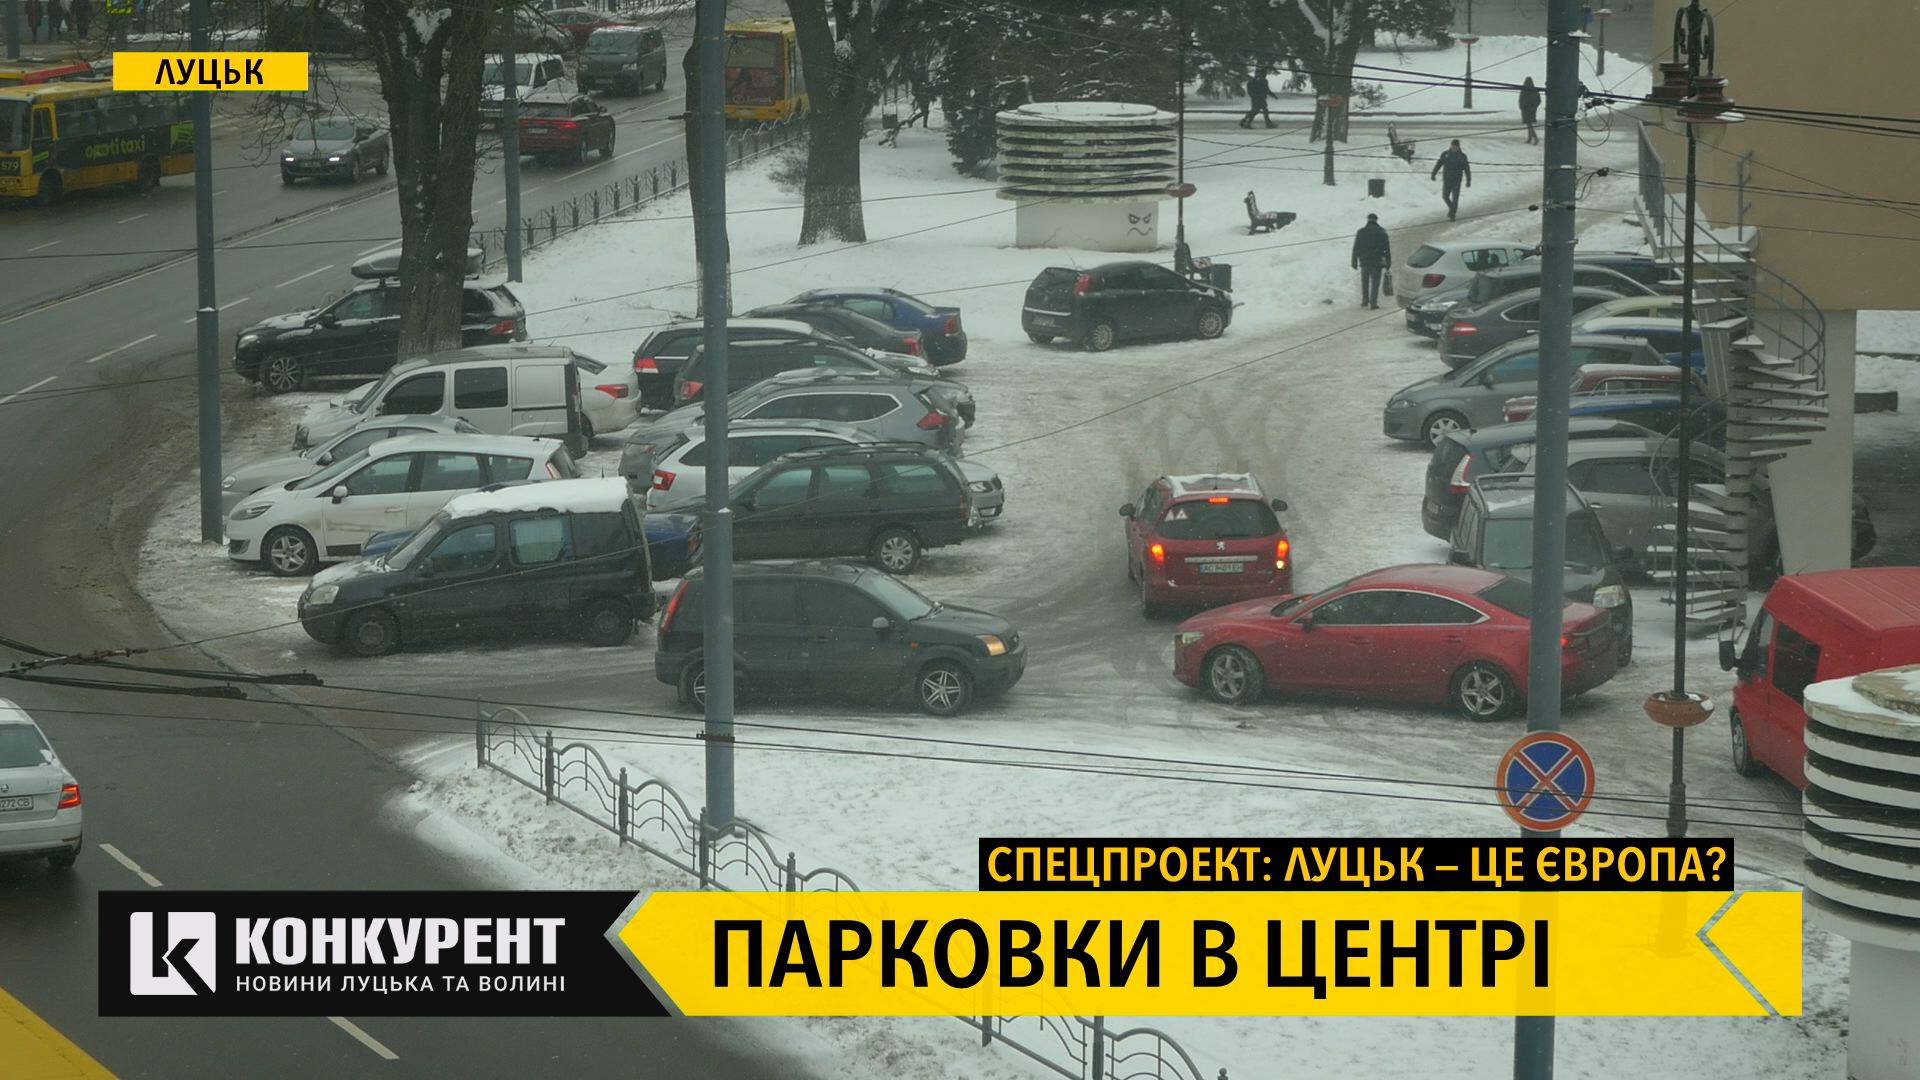 Застарілі ПДР, обмежувачі руху і відсутність маркування: проблеми хаотичного паркування в центрі Луцька (відео)